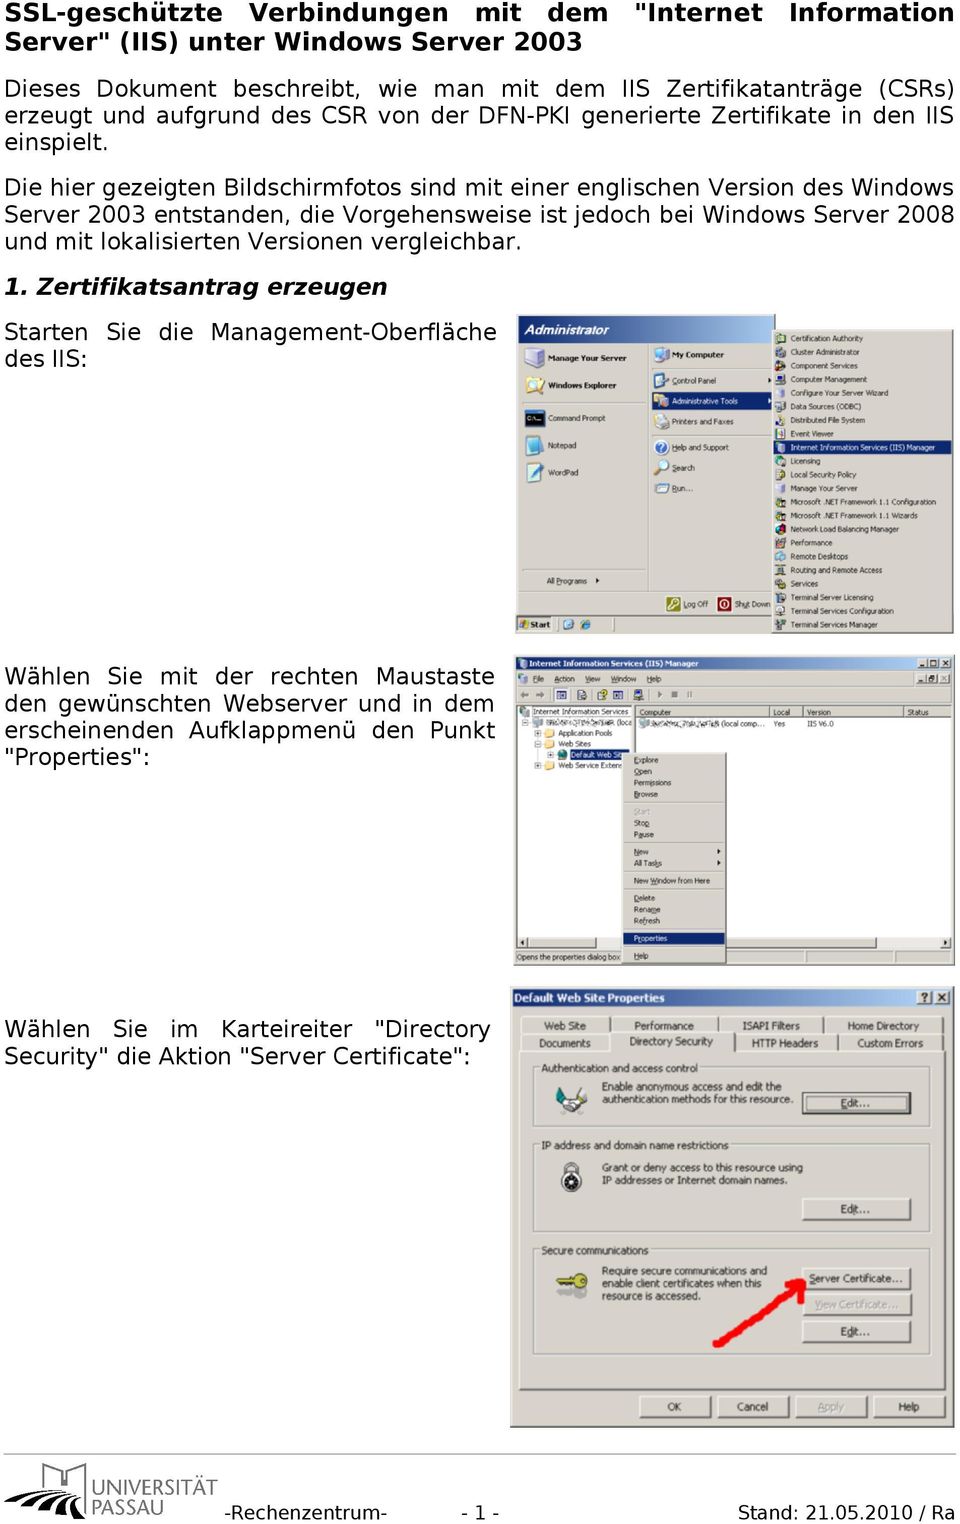 Die hier gezeigten Bildschirmfotos sind mit einer englischen Version des Windows Server 2003 entstanden, die Vorgehensweise ist jedoch bei Windows Server 2008 und mit lokalisierten Versionen